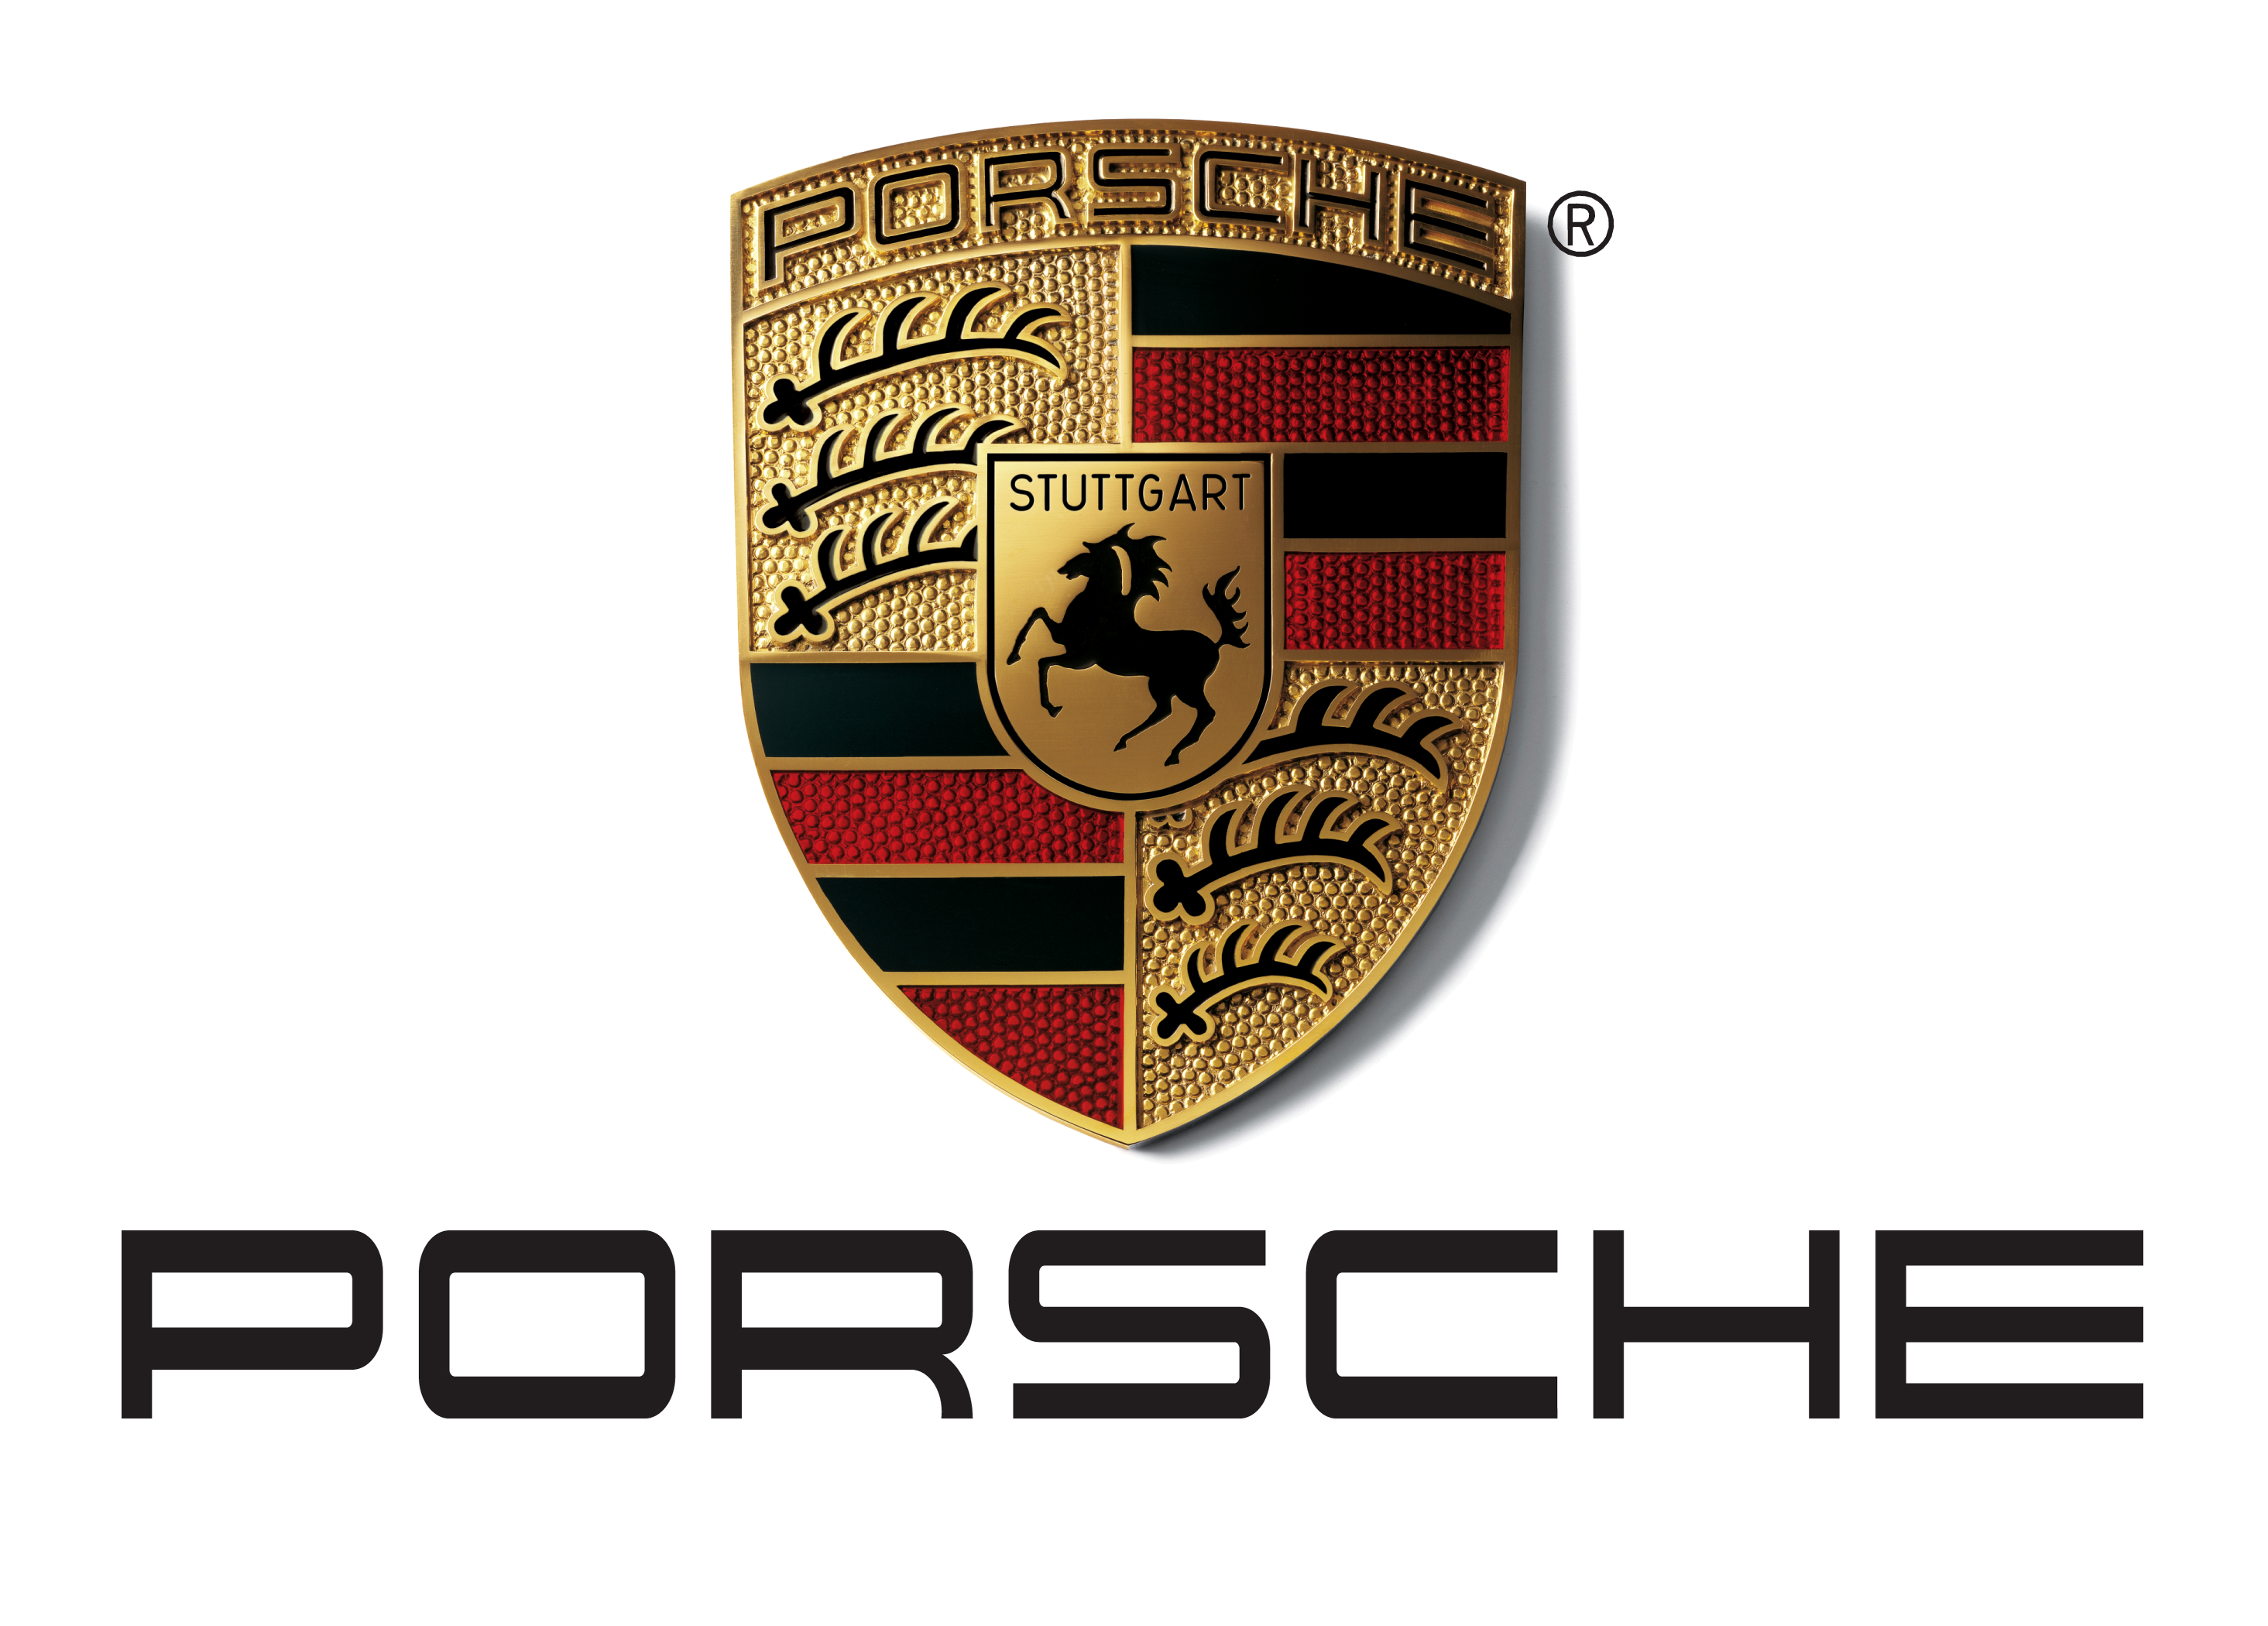 RÃ©sultat de recherche d'images pour "porsche logo"